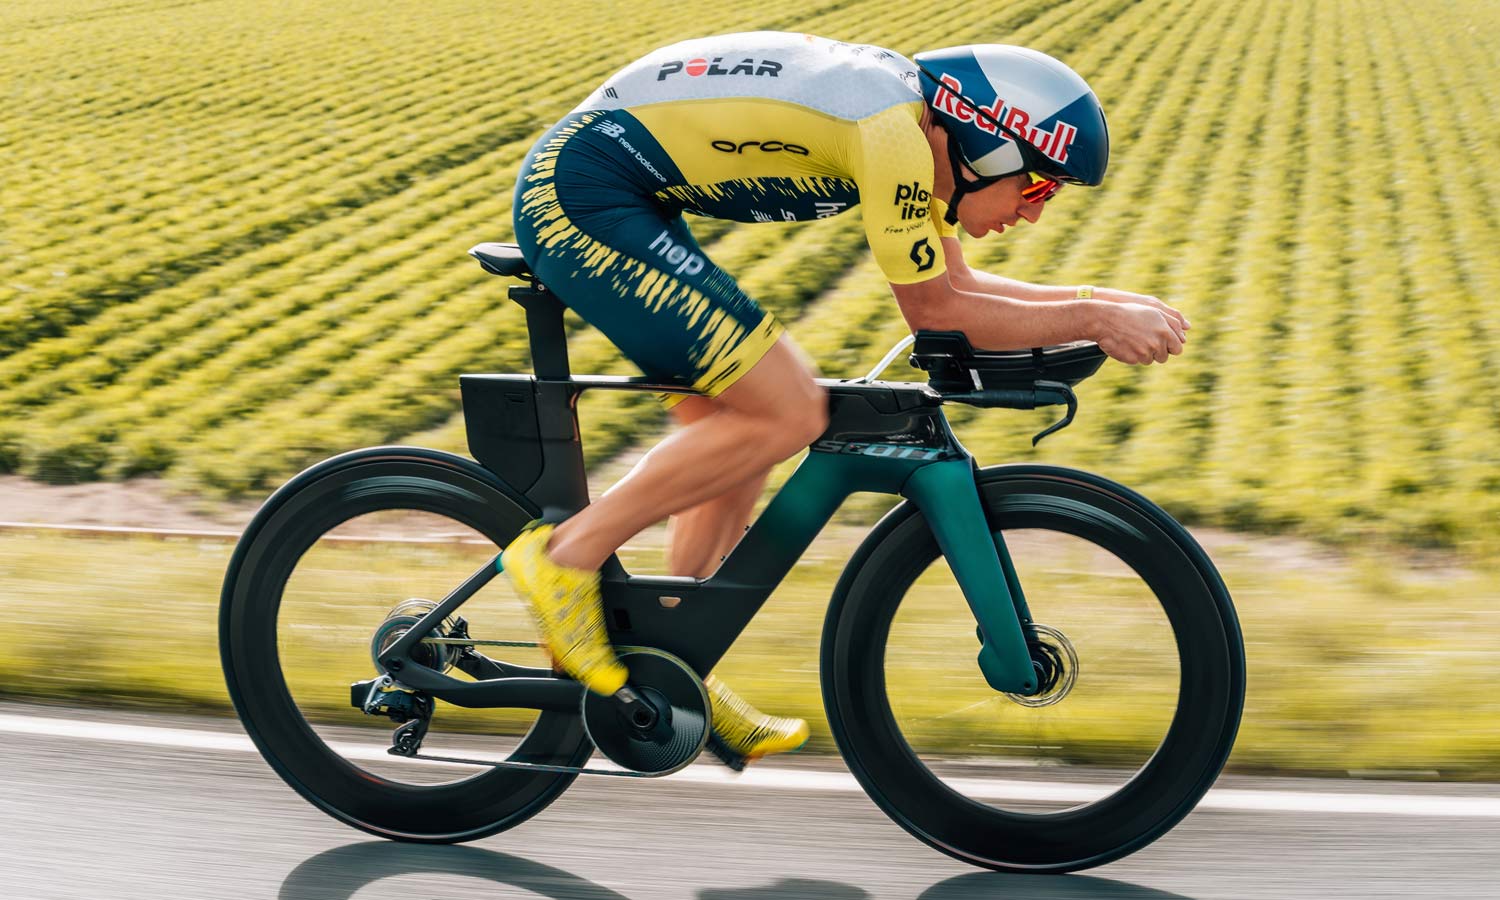 2021 Scott Plasma 6 integrated aero carbon triathlon bike, Sebastian Kienle